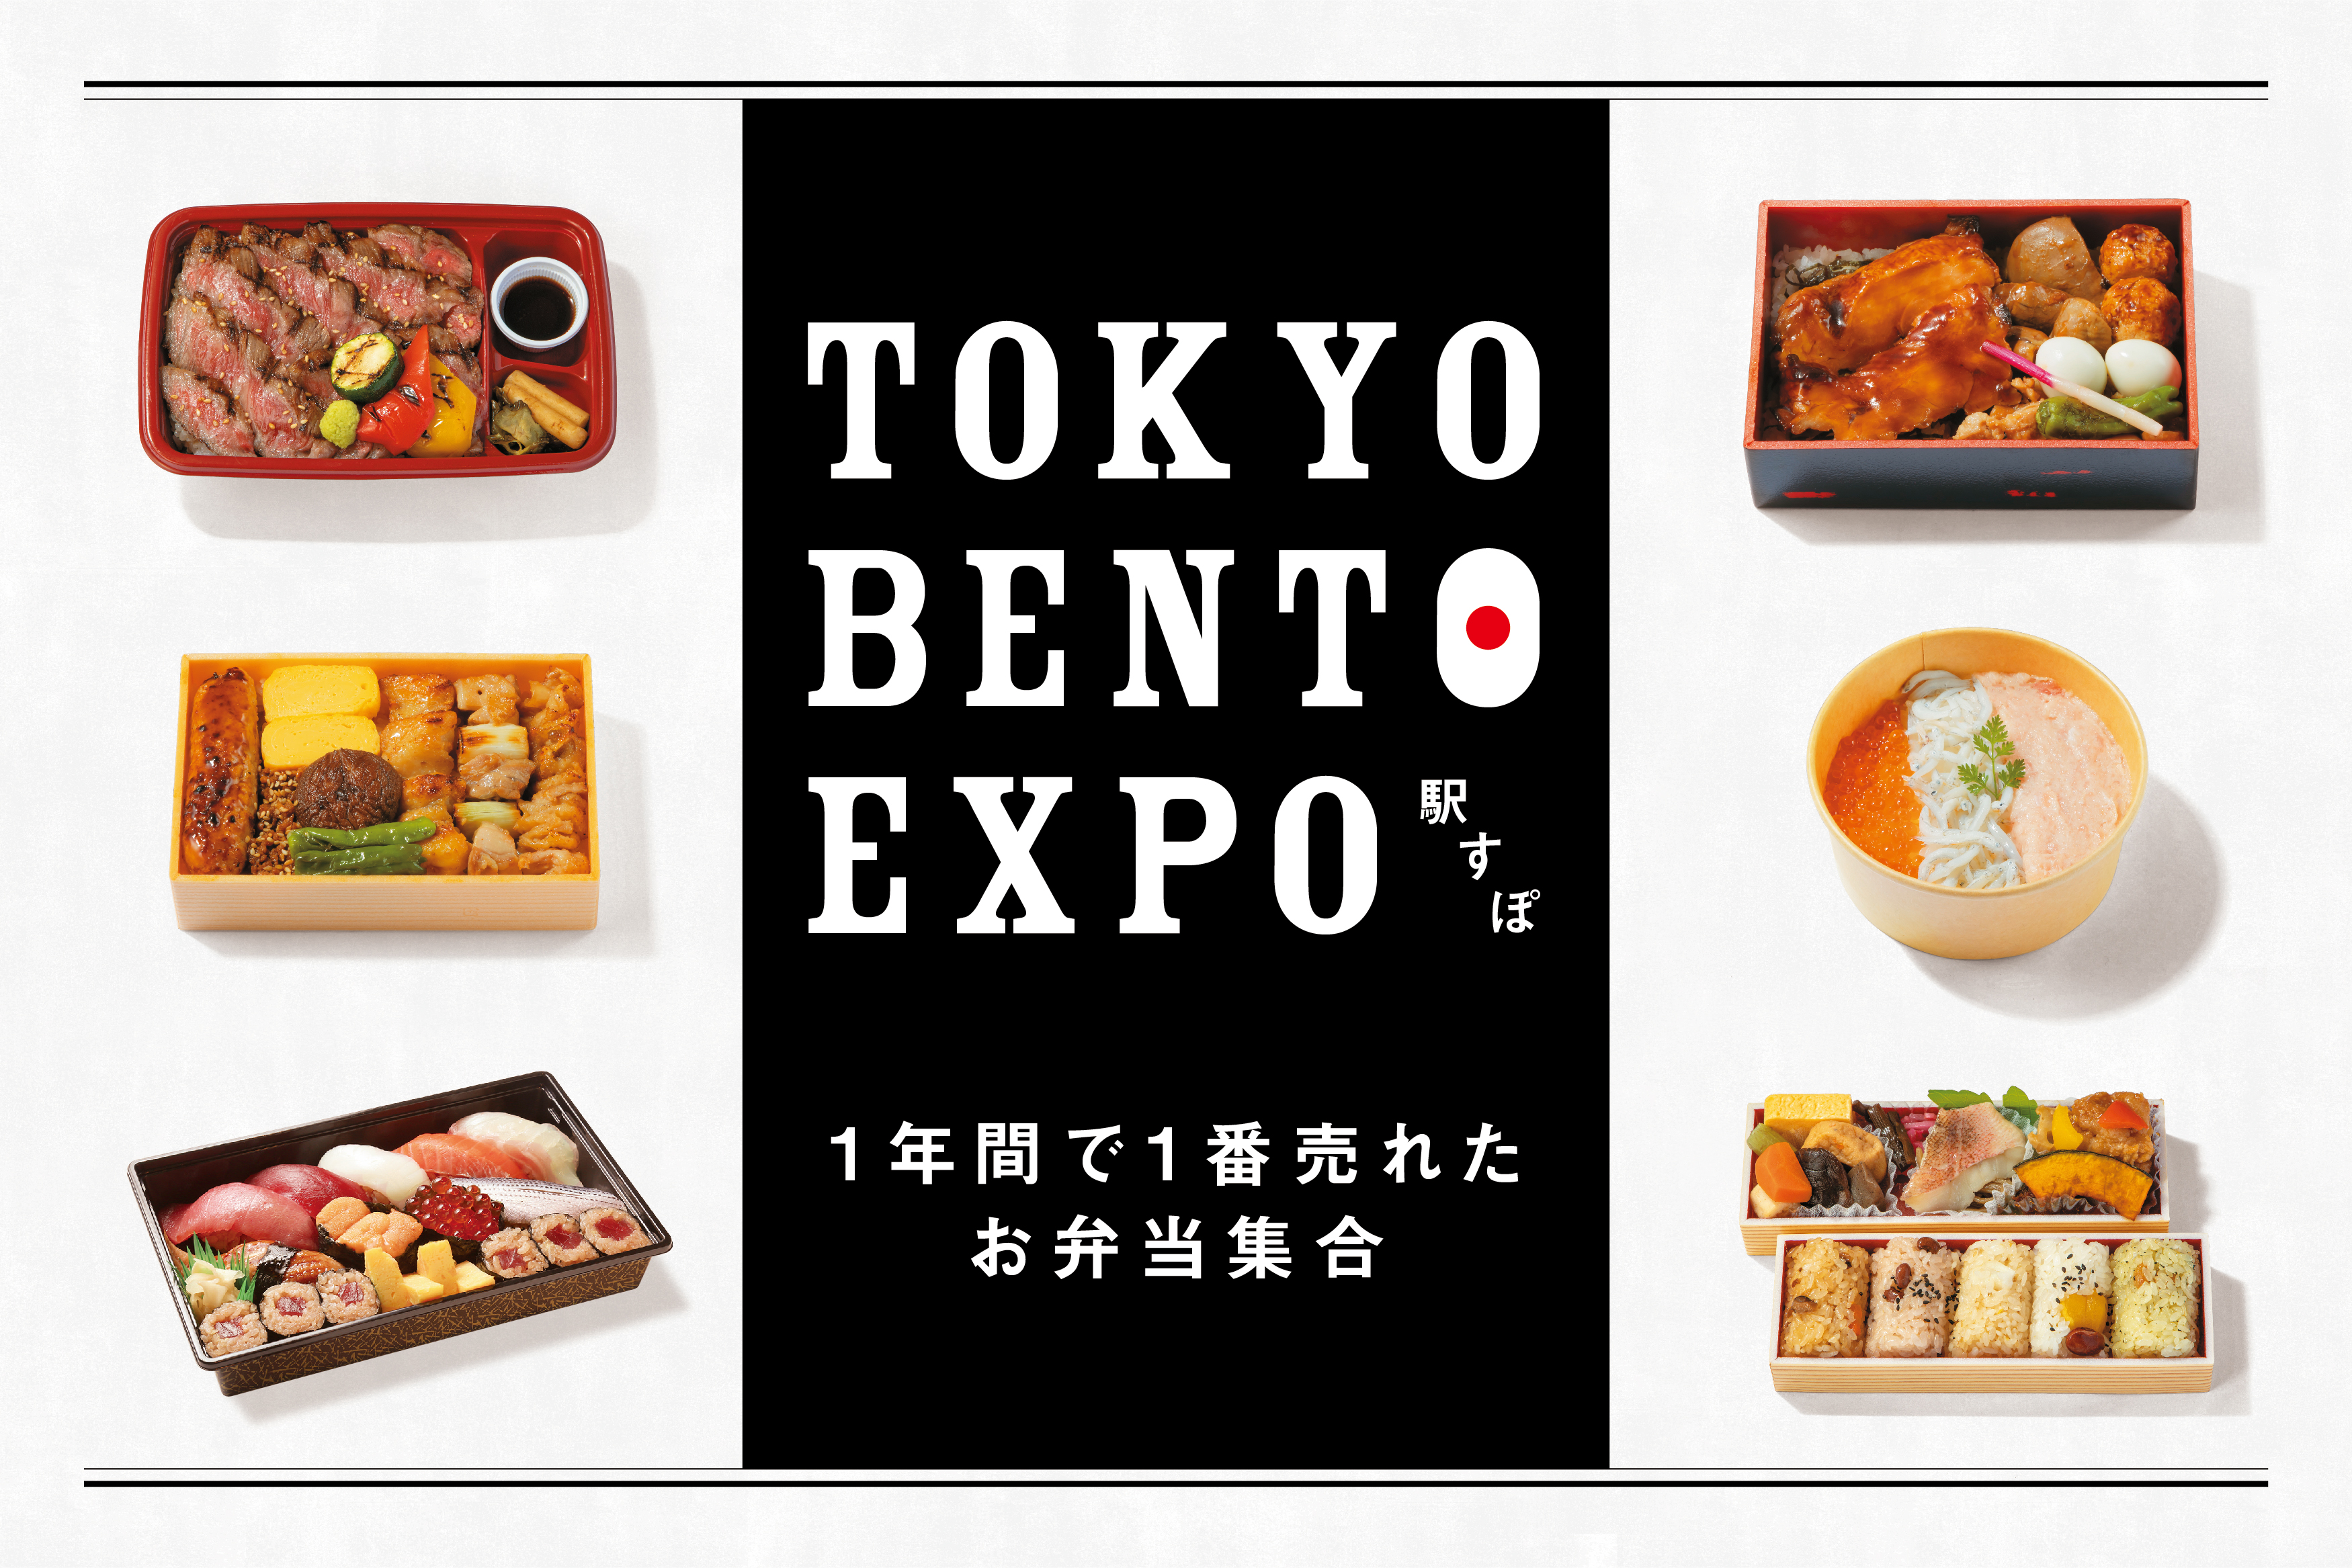 TOKYO BENTO EXPO